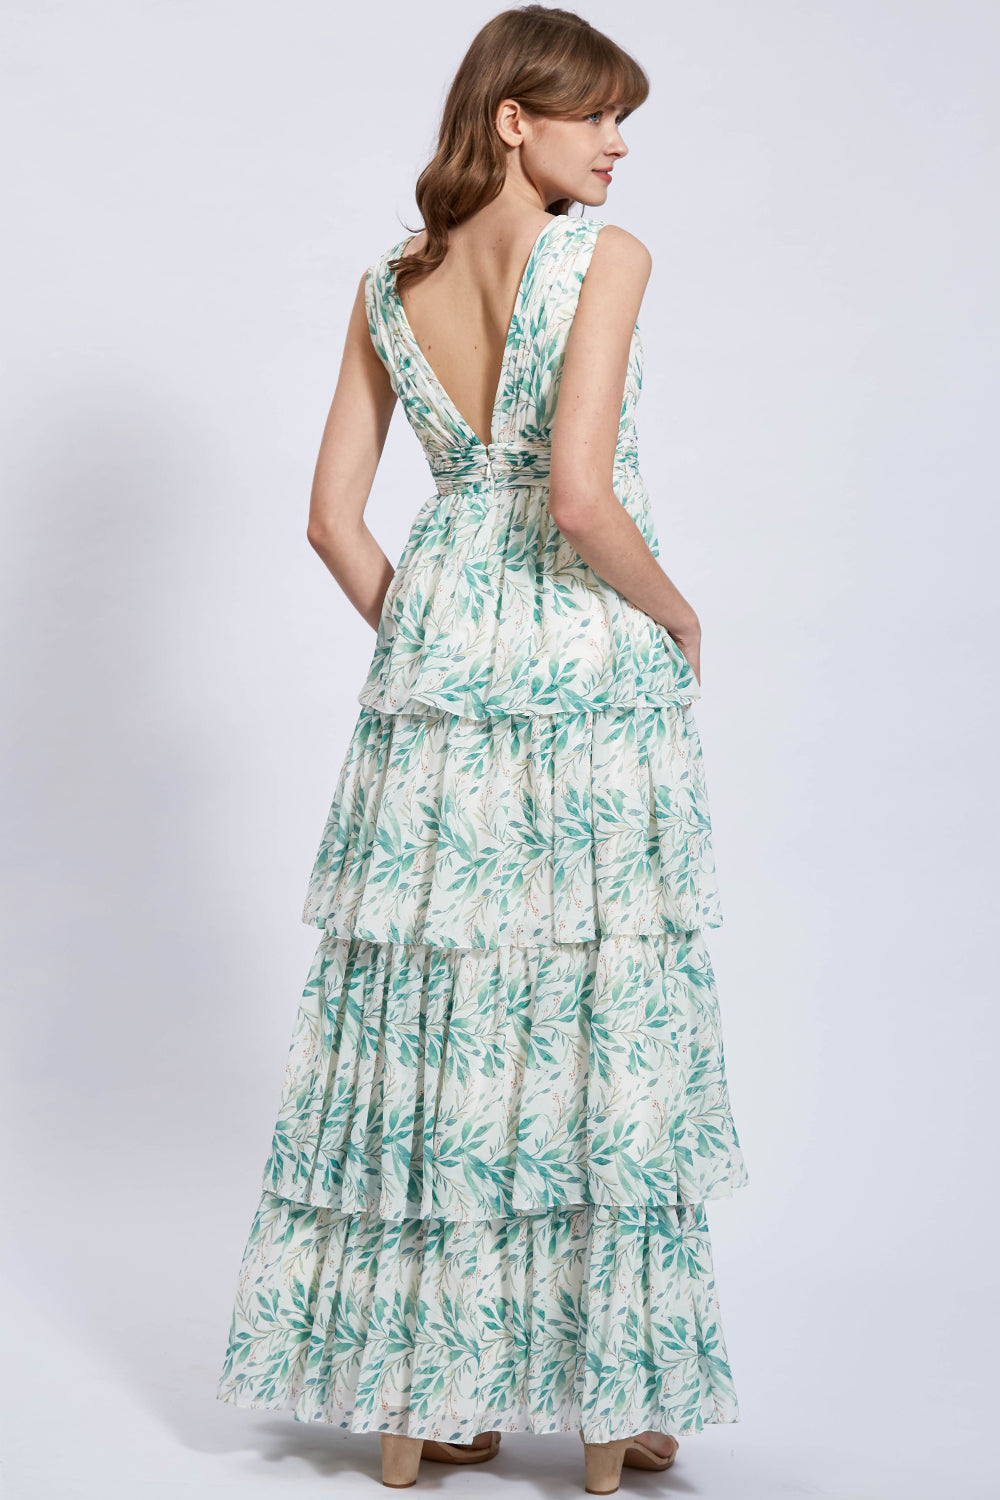 MissJophiel Straps V Neck Floral Chiffon Sage Tiered Formal Evening Gown